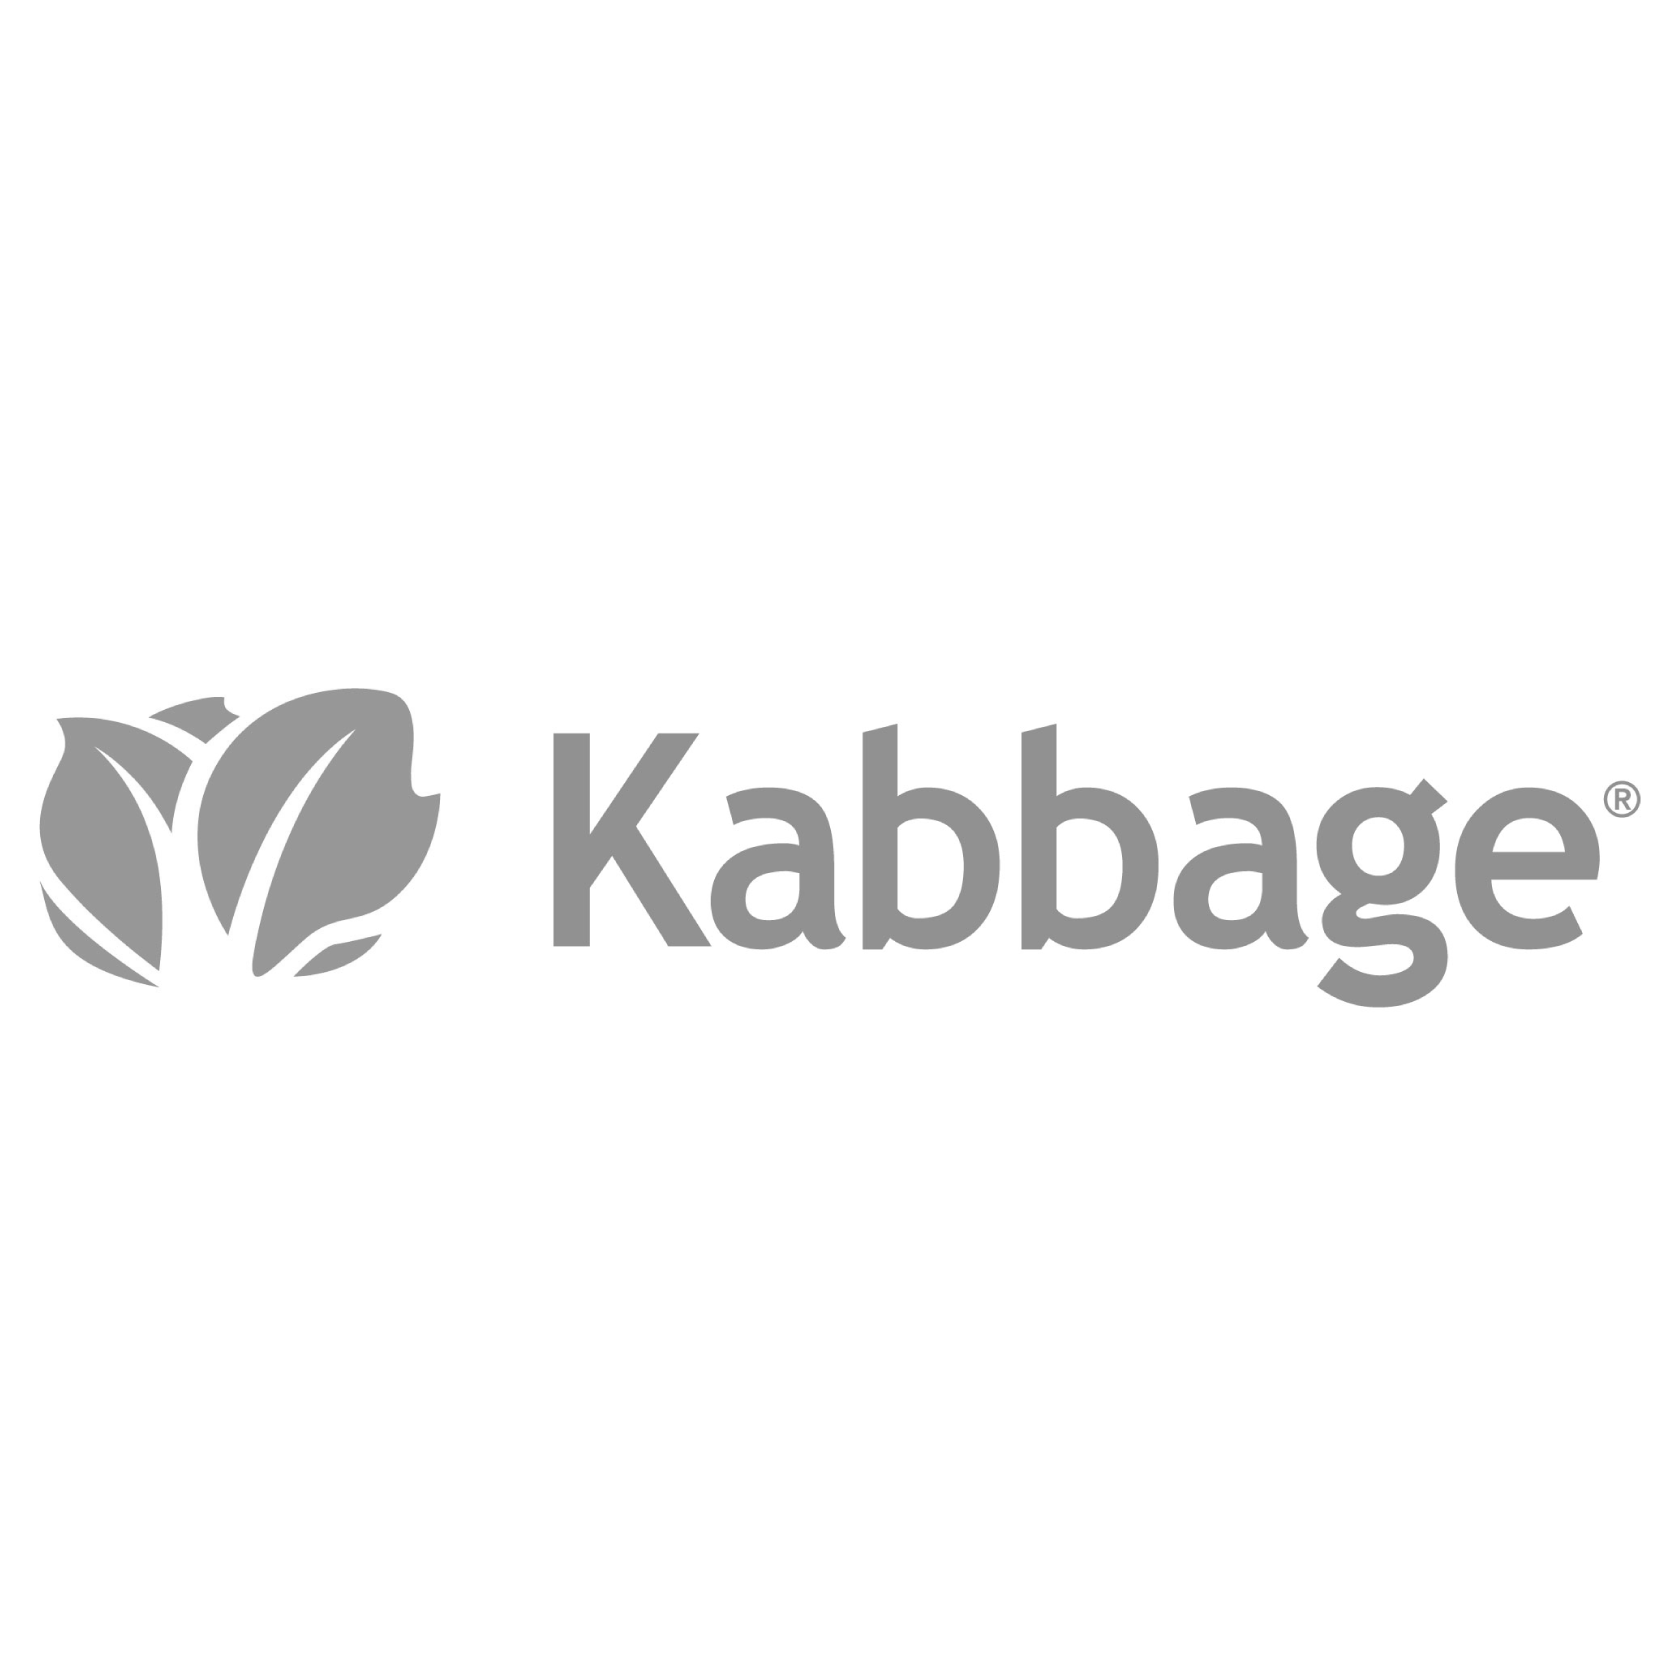 Kabbage-01